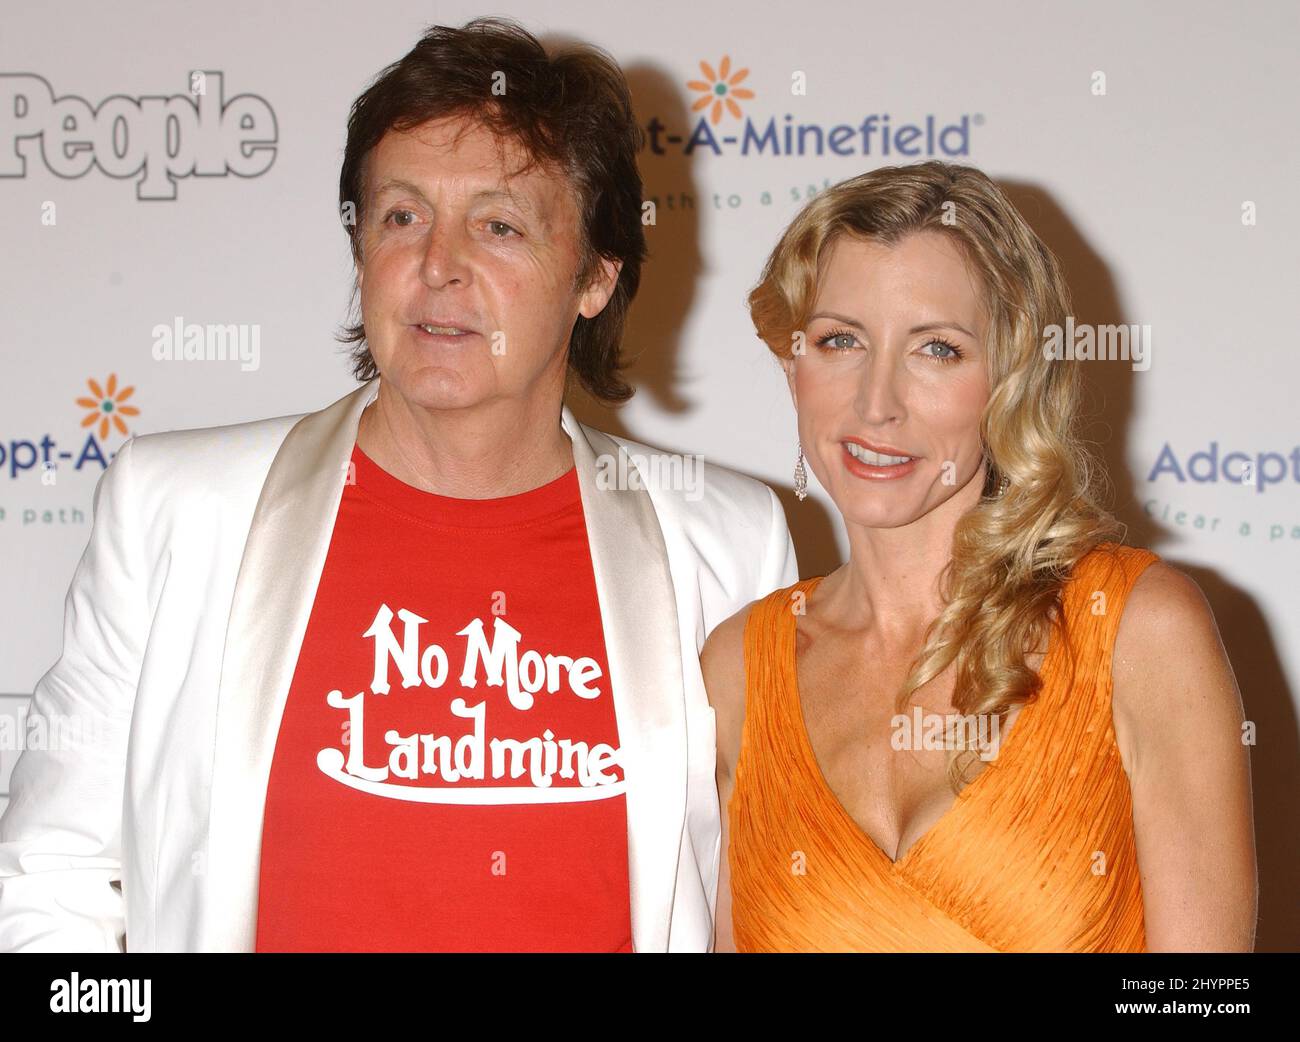 Paul McCartney y Heather Mills McCartney asisten a la Quinta Gala Anual de Adopte-A-Minefield en el Beverly Hilton Hotel. Foto: Prensa del Reino Unido Foto de stock